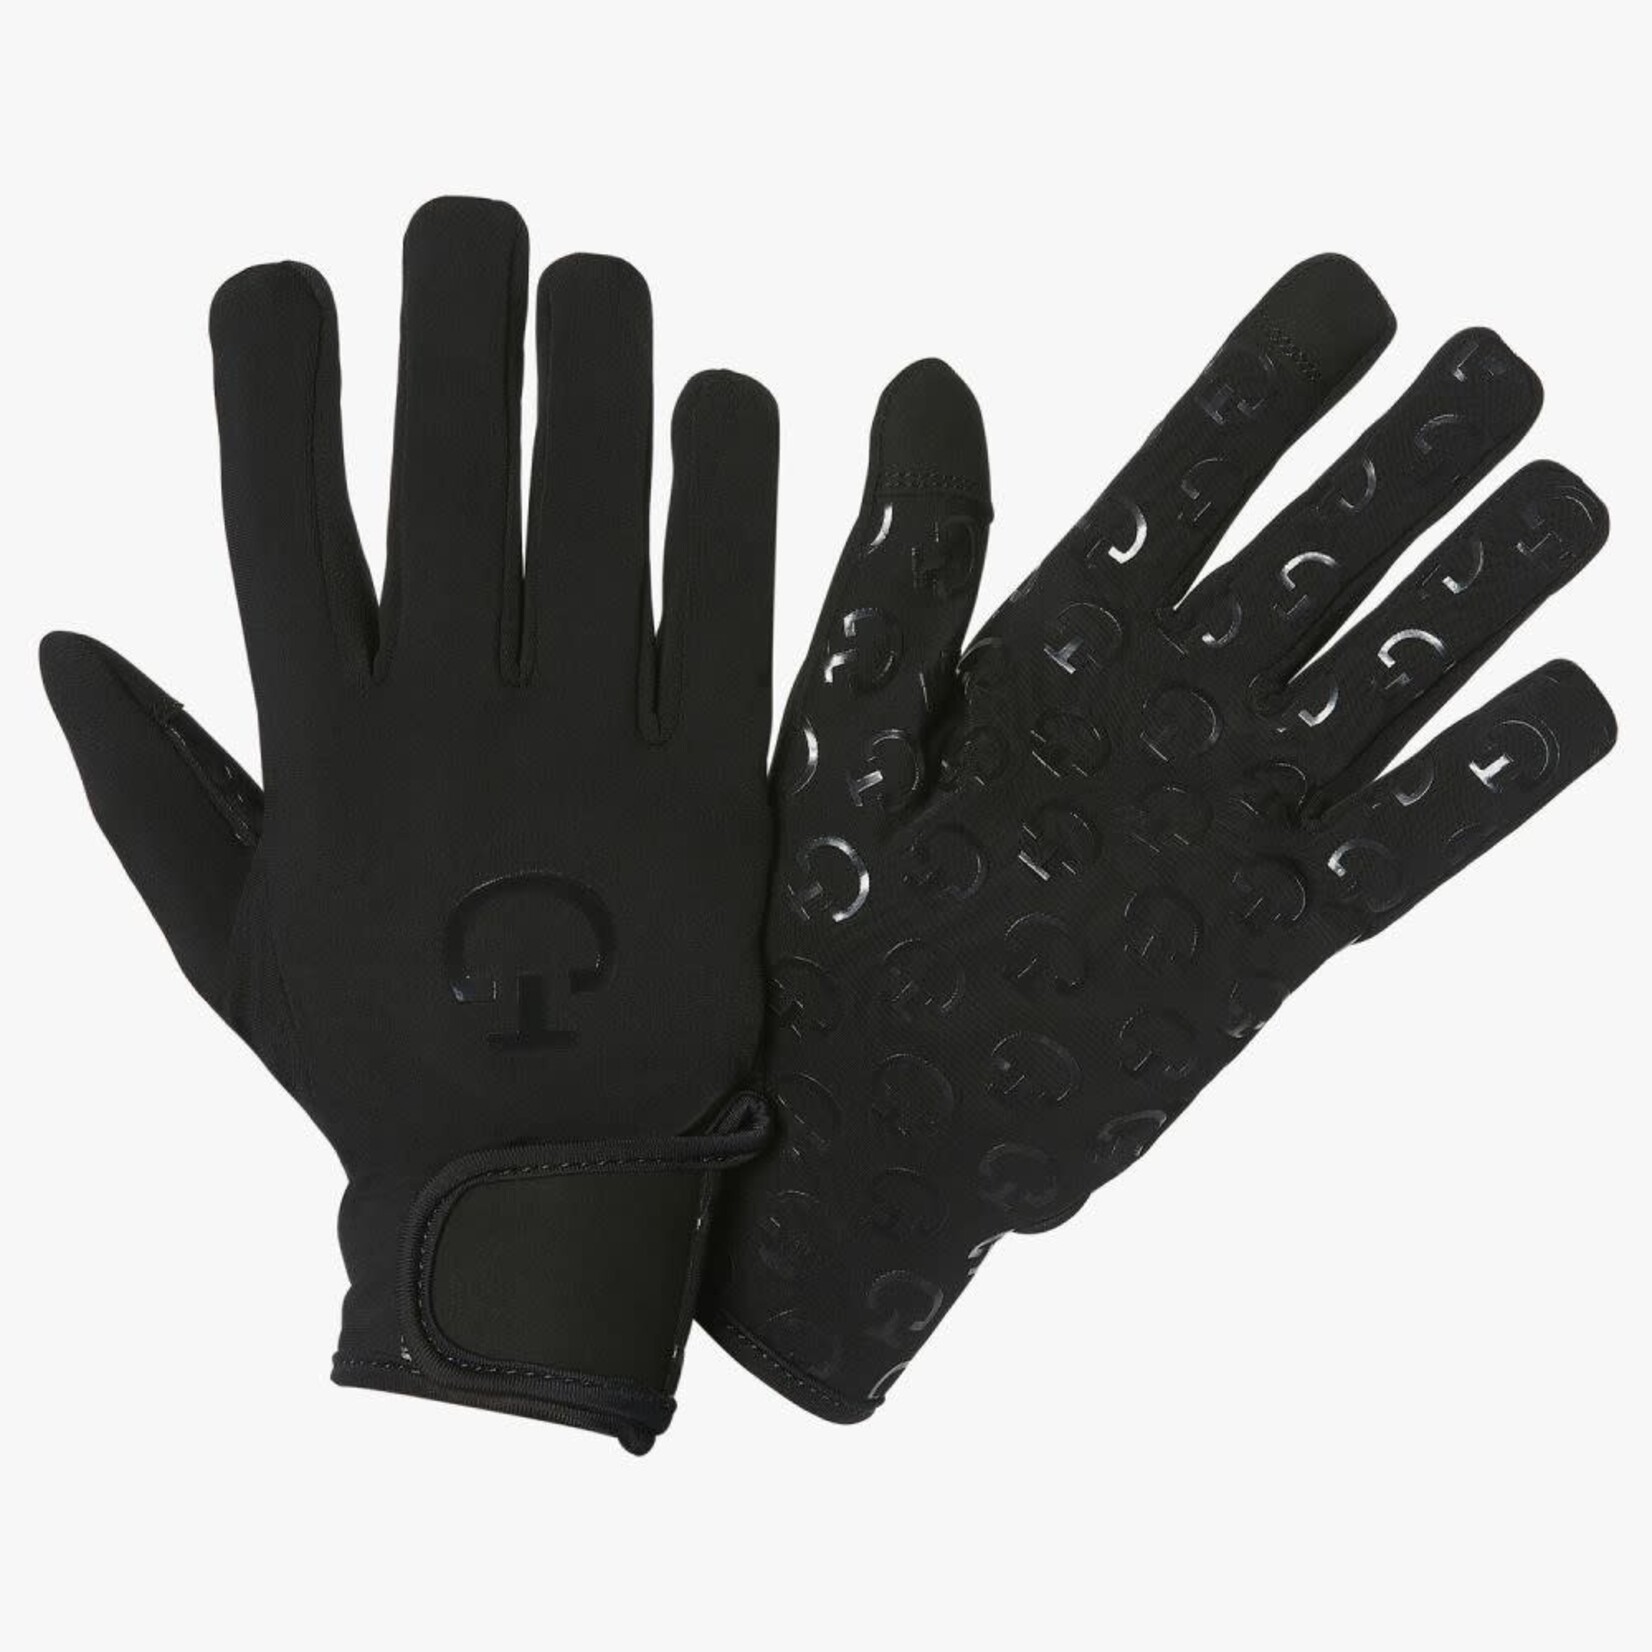 Cavalleria Toscana Cavalleria toscana winter handschoenen zwart